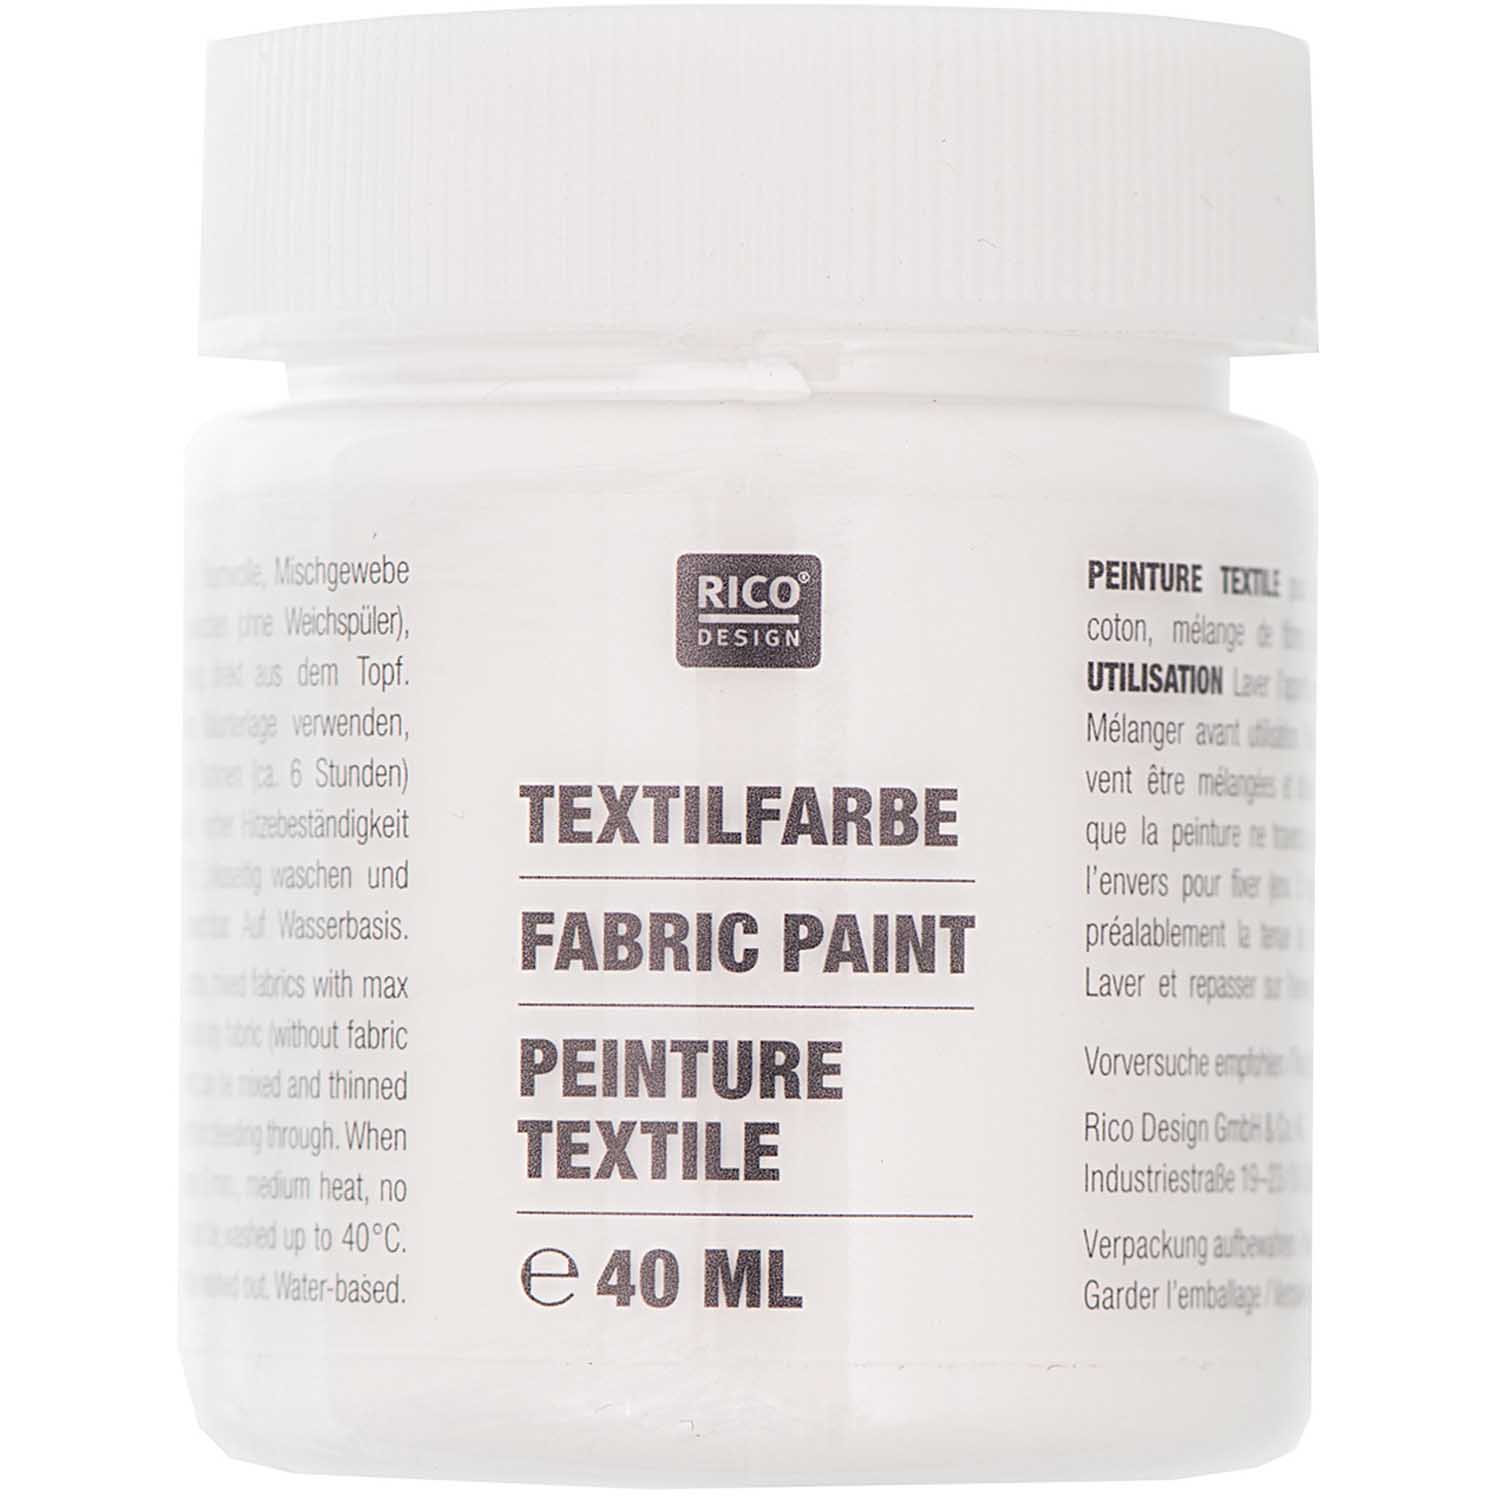 Textilfarbe, weiß, 40 ml, Rico Design. Art. 7014.520